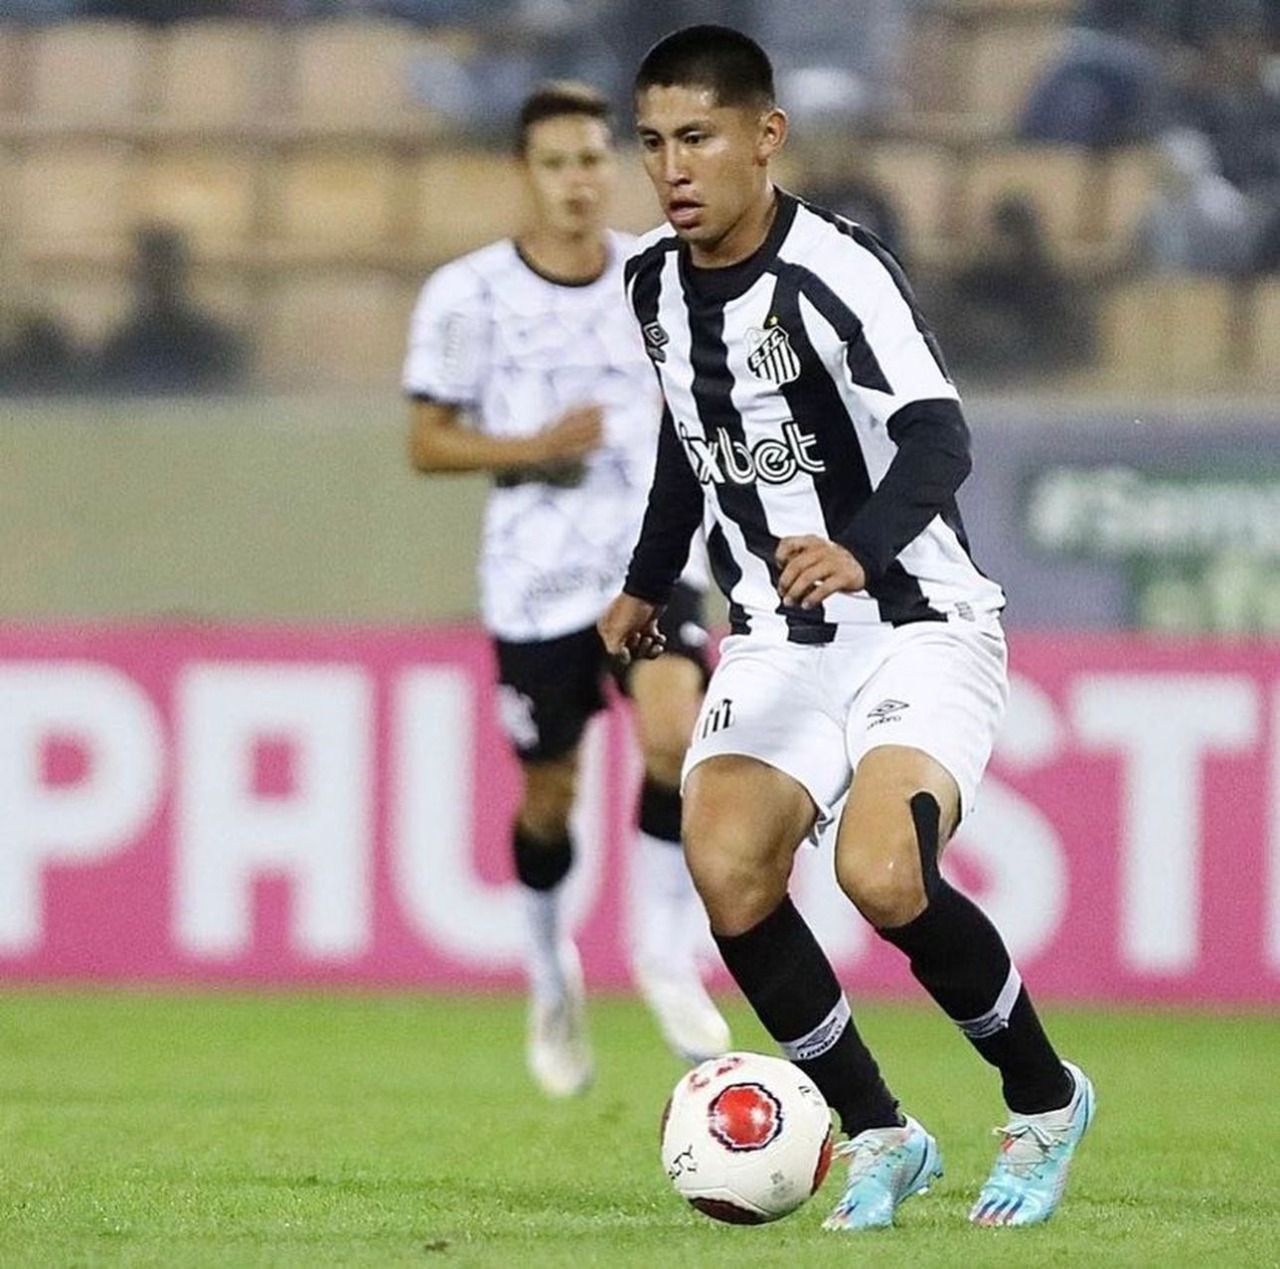 MIGUELITO El joven talento que impresiona al Santos FC